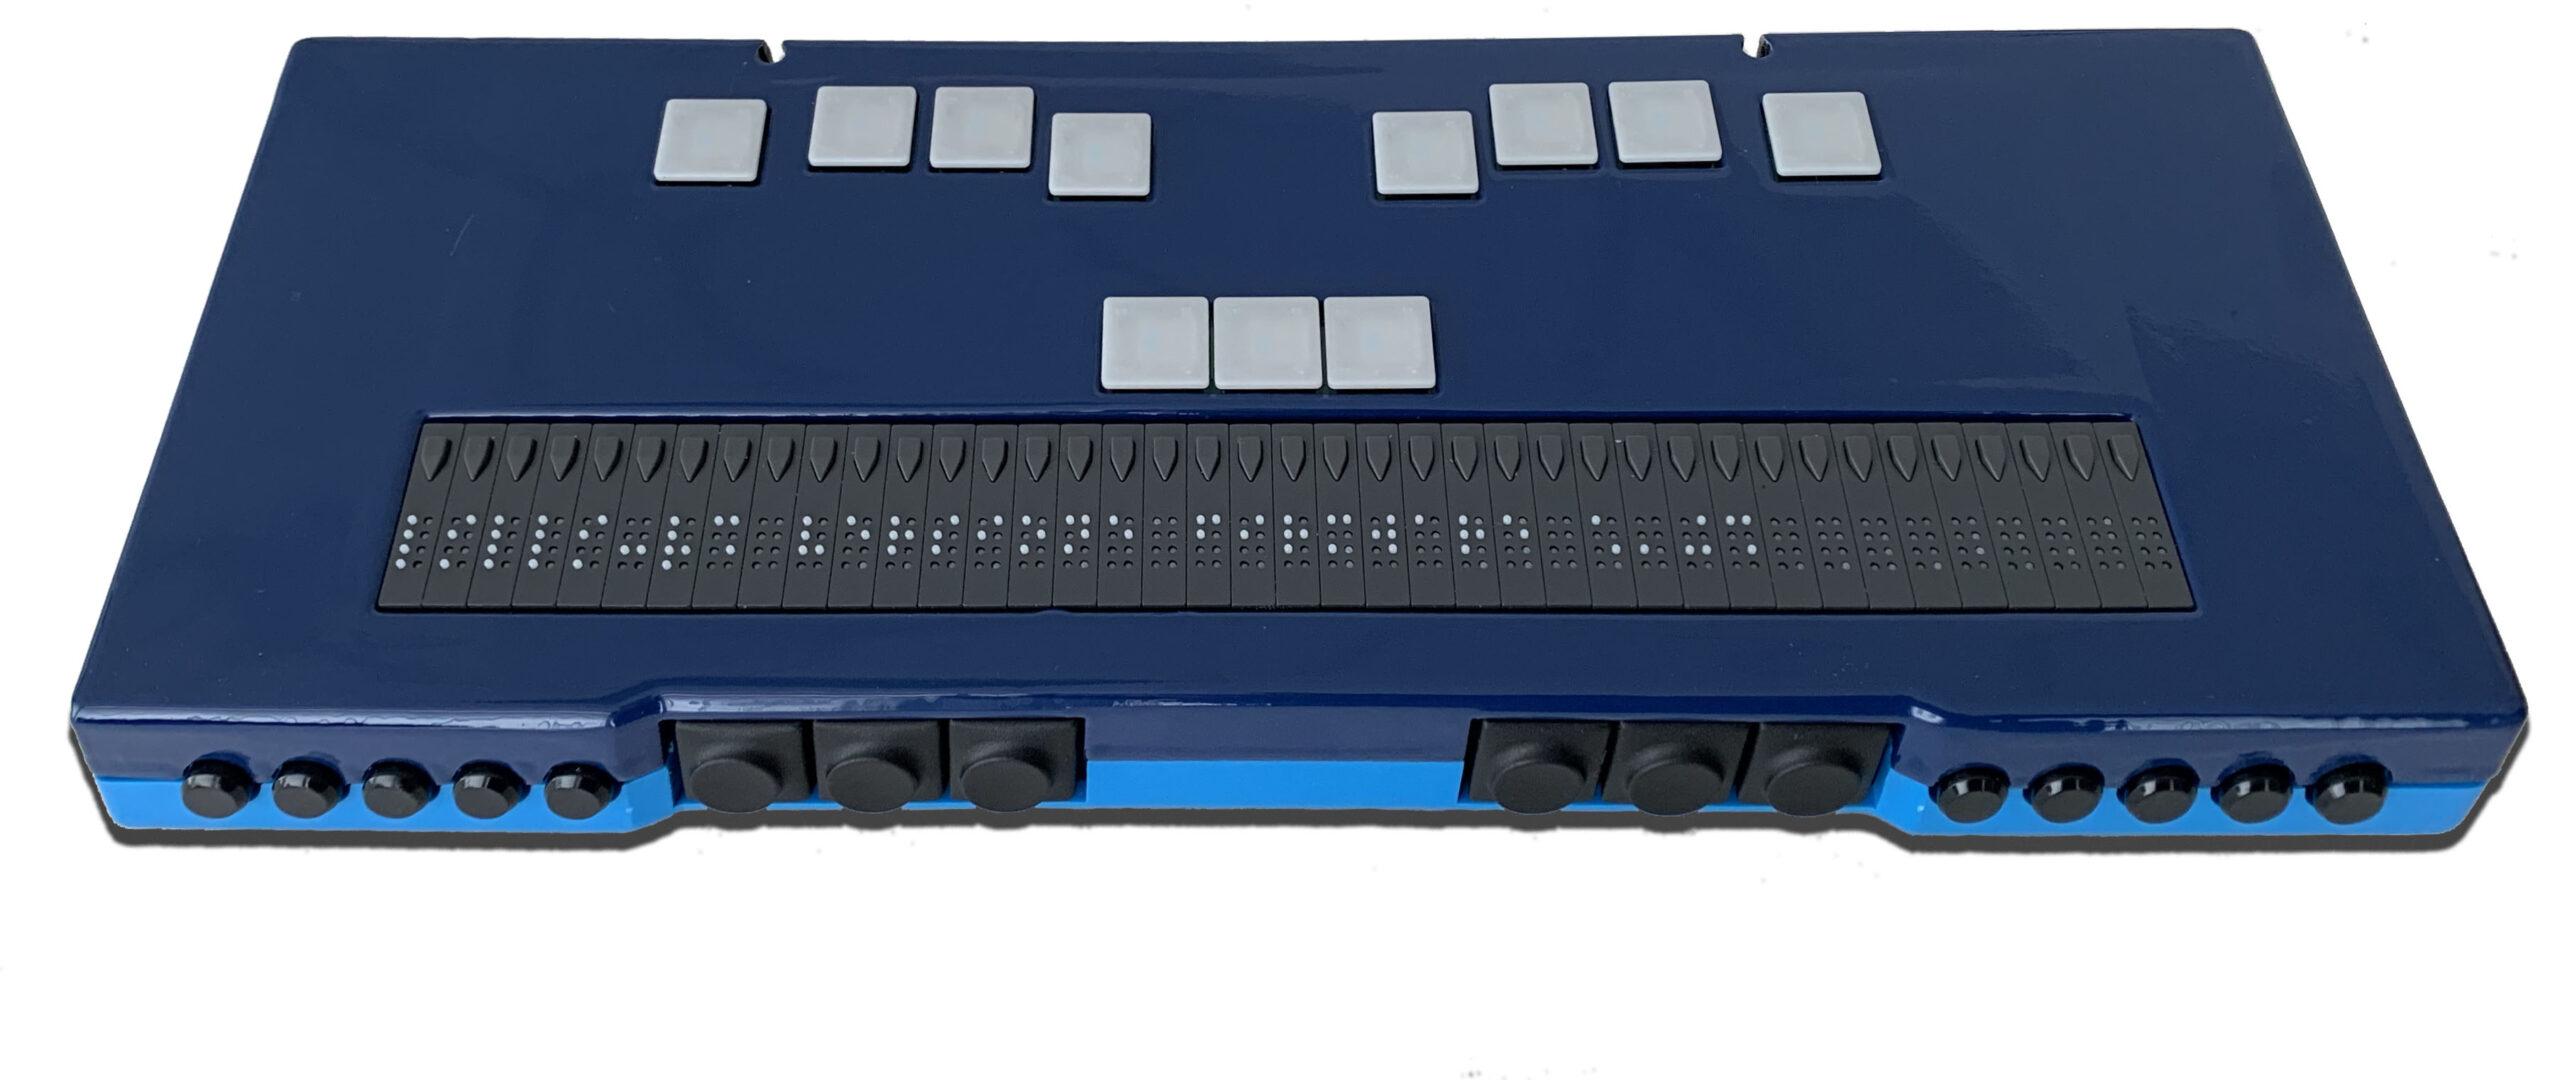 Un modello di display braille commercializzato dall'azienda Ausiltech.